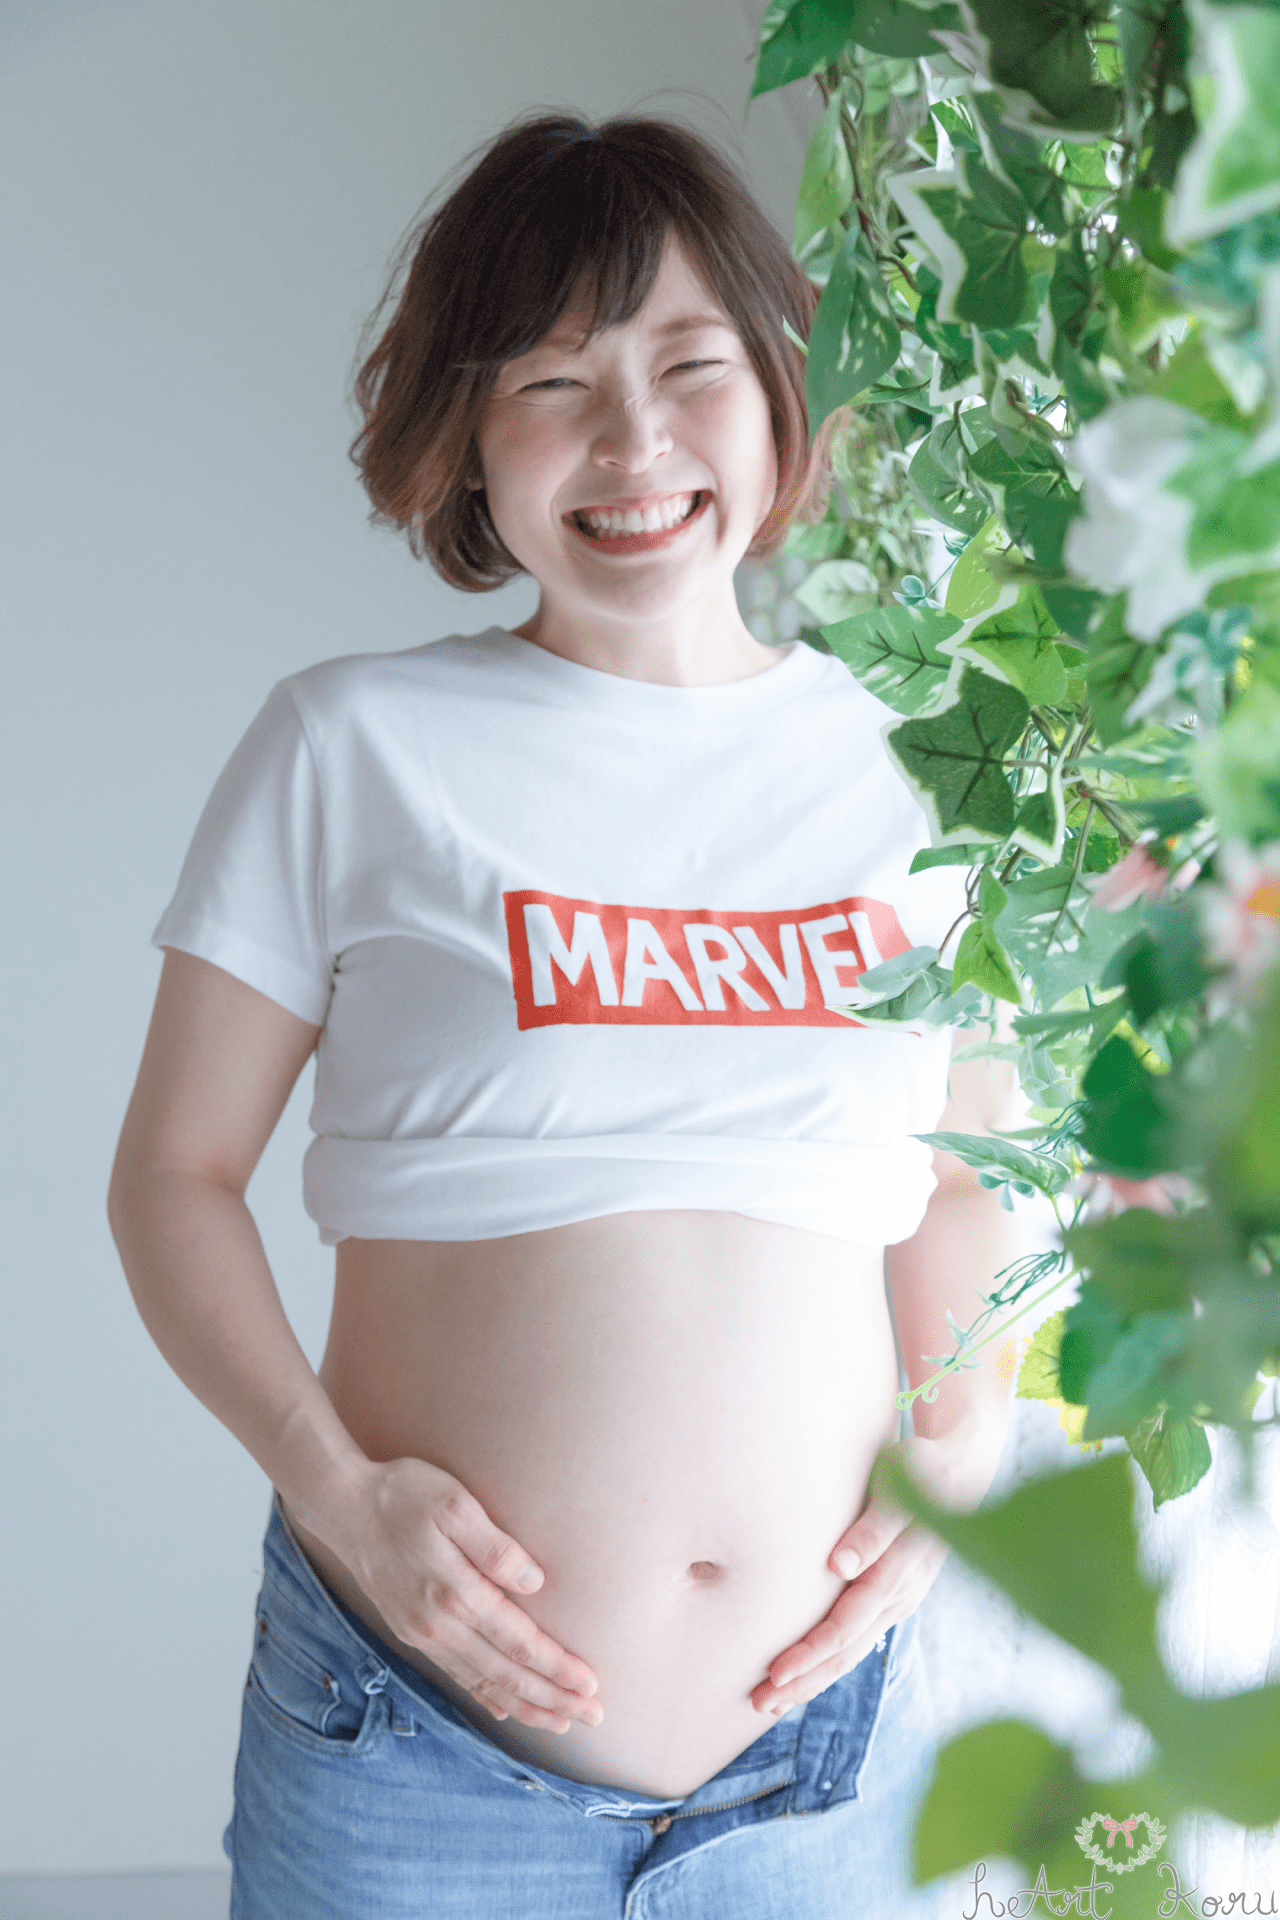 マタニティフォト（ペイント前）。妊婦さんがデニムとTシャツをマタニティフォトの衣装として着ている可愛いマタニティ撮影。妊婦さんが笑顔で写っている。自然光と緑が綺麗なマタニティ写真。